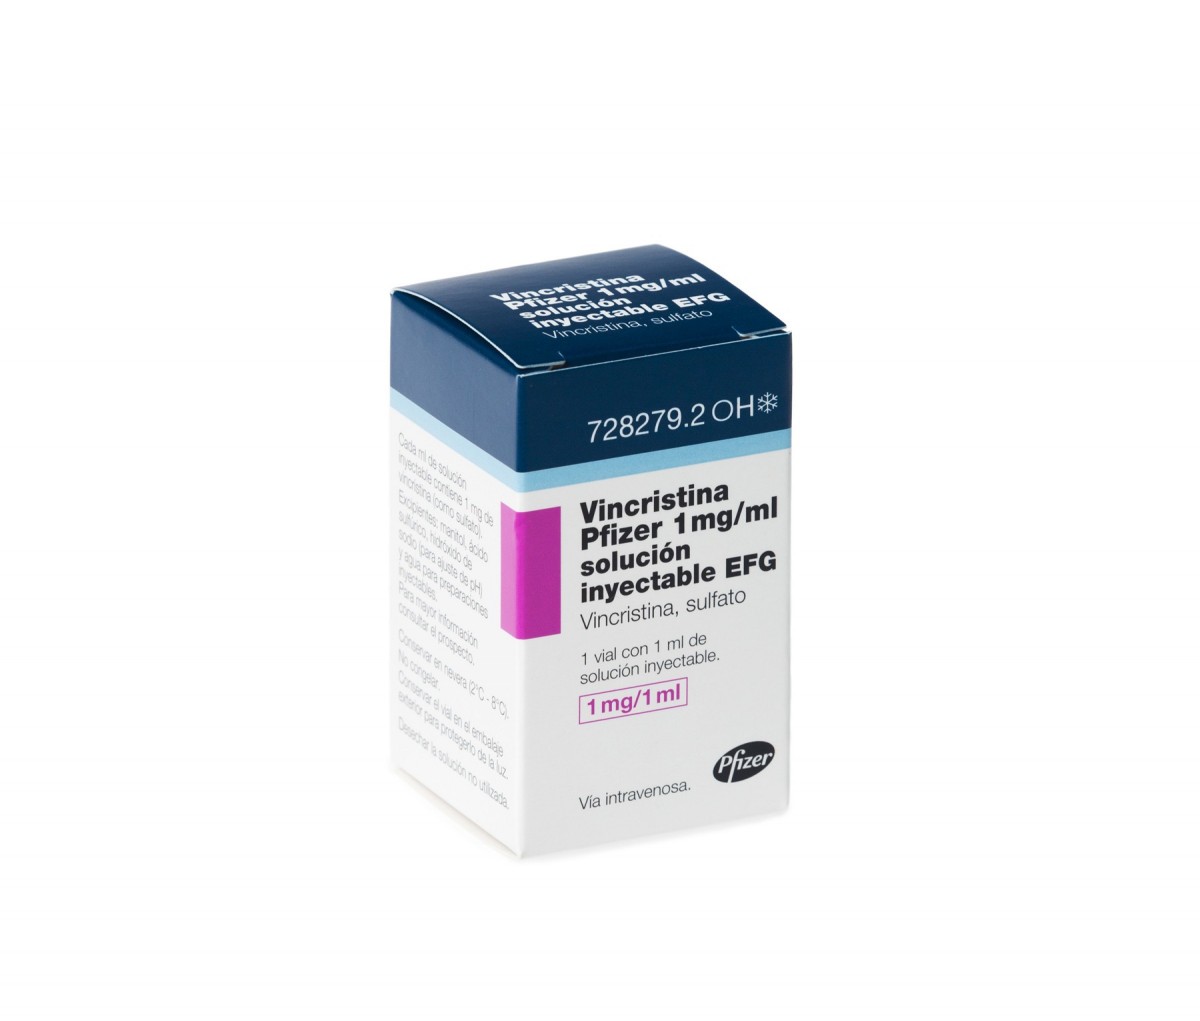 VINCRISTINA PFIZER 1 mg/ml SOLUCION INYECTABLE EFG , 1 vial con 2 ml fotografía del envase.